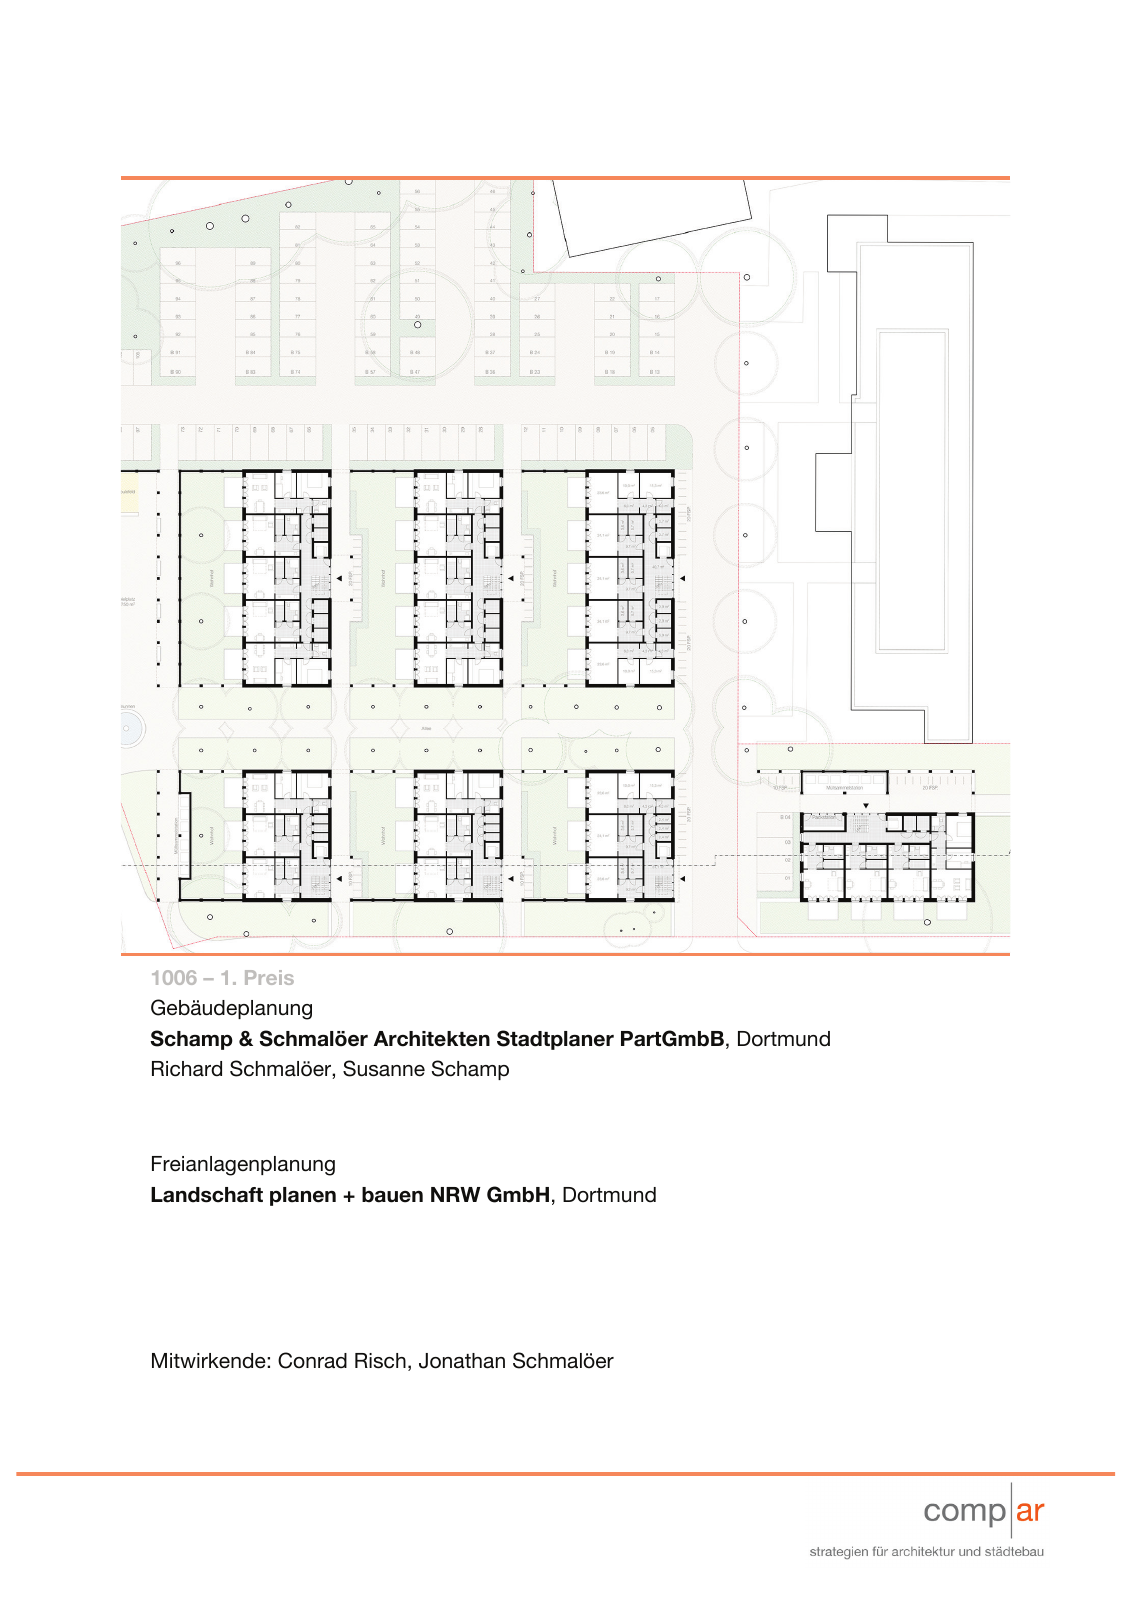 Vorschau Neubau von 100 Wohneinheiten [Nordhorn] Seite 3